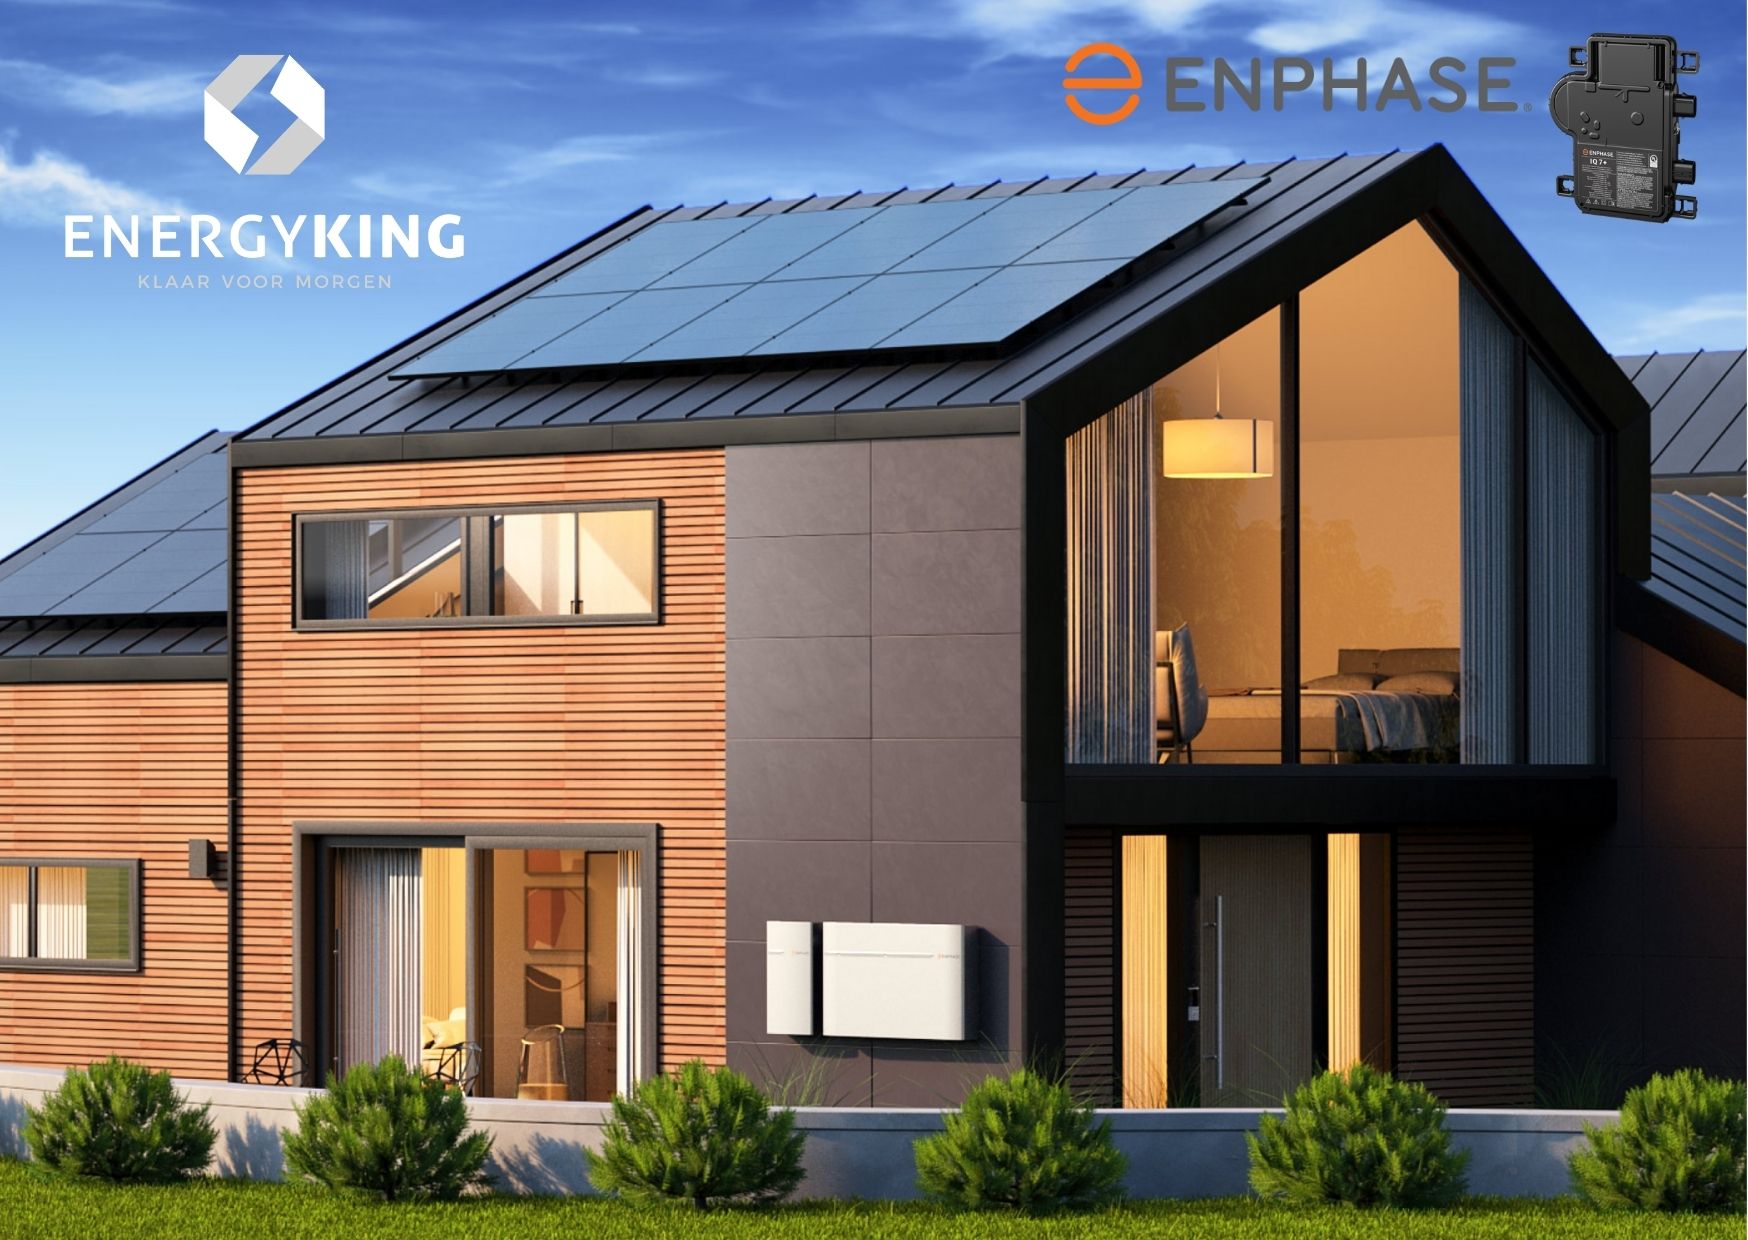 Huis met zonnepanelen van Enphase en batterijen van Enphase